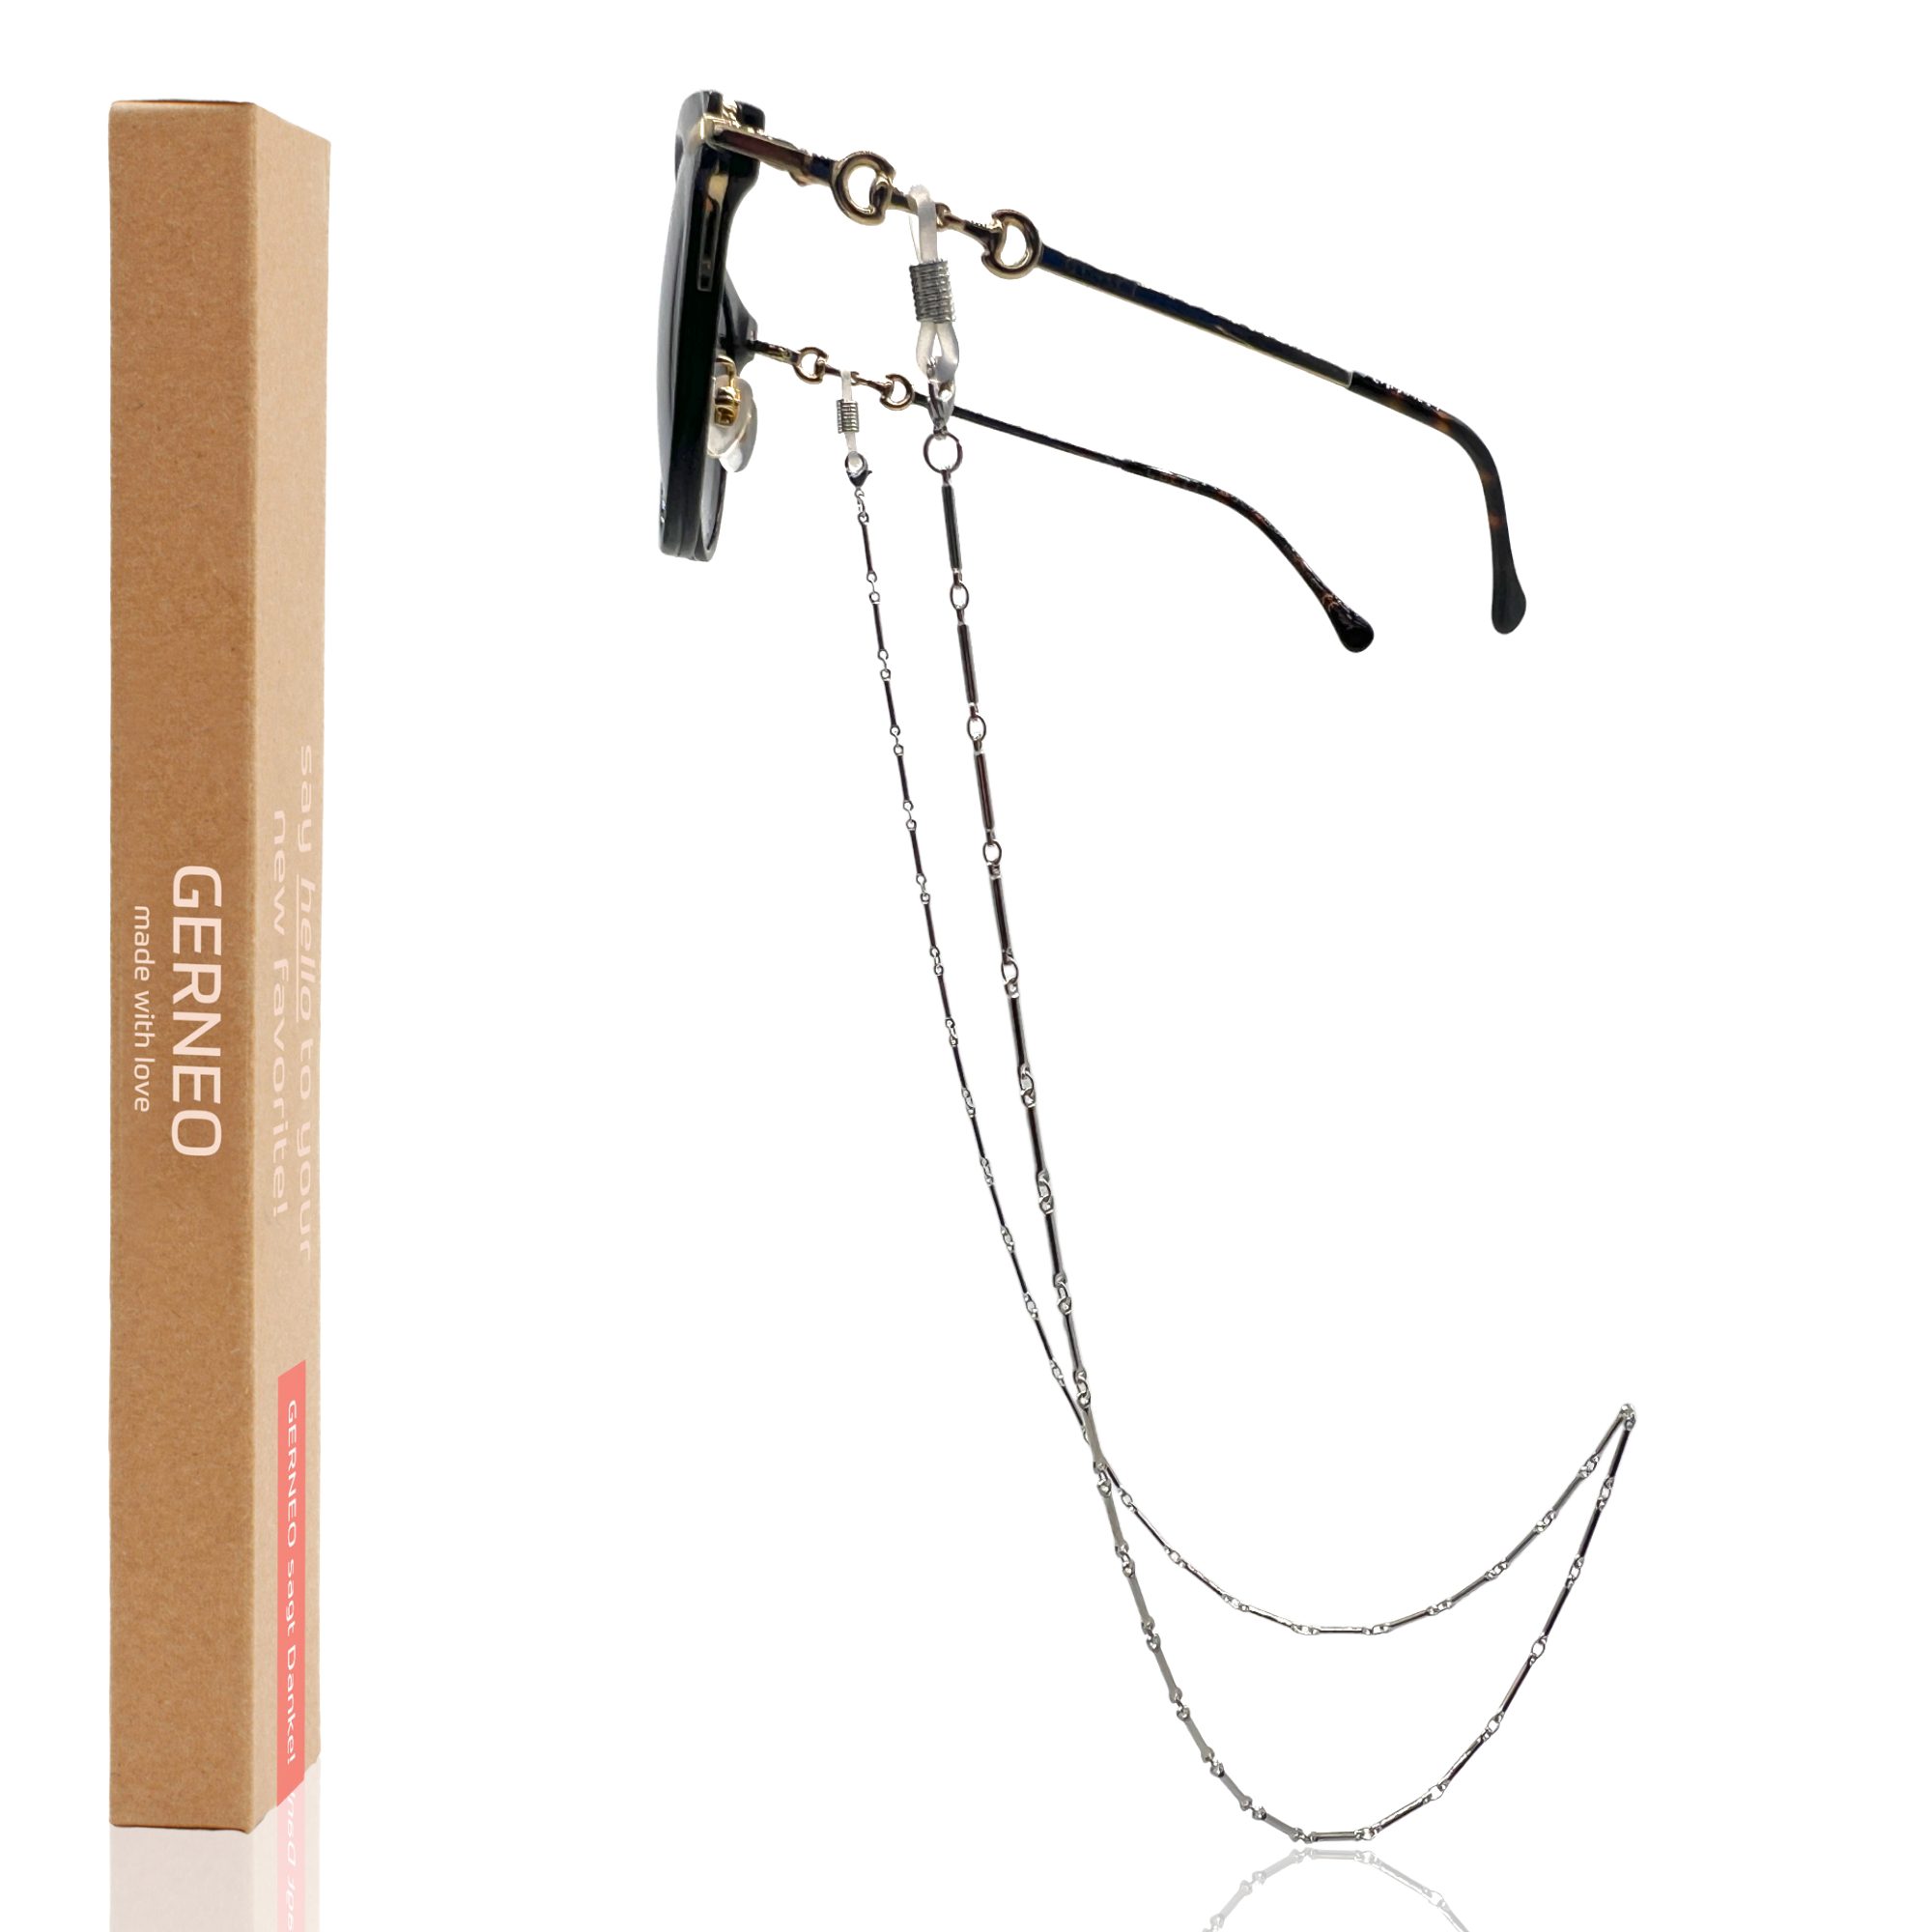 GERNEO Brillenkette GERNEO® – Phuket – korrosionsbeständige Brillenkette & Maskenhalter, vergoldet oder versilbert – einzigartig hochwertige Brillenkette